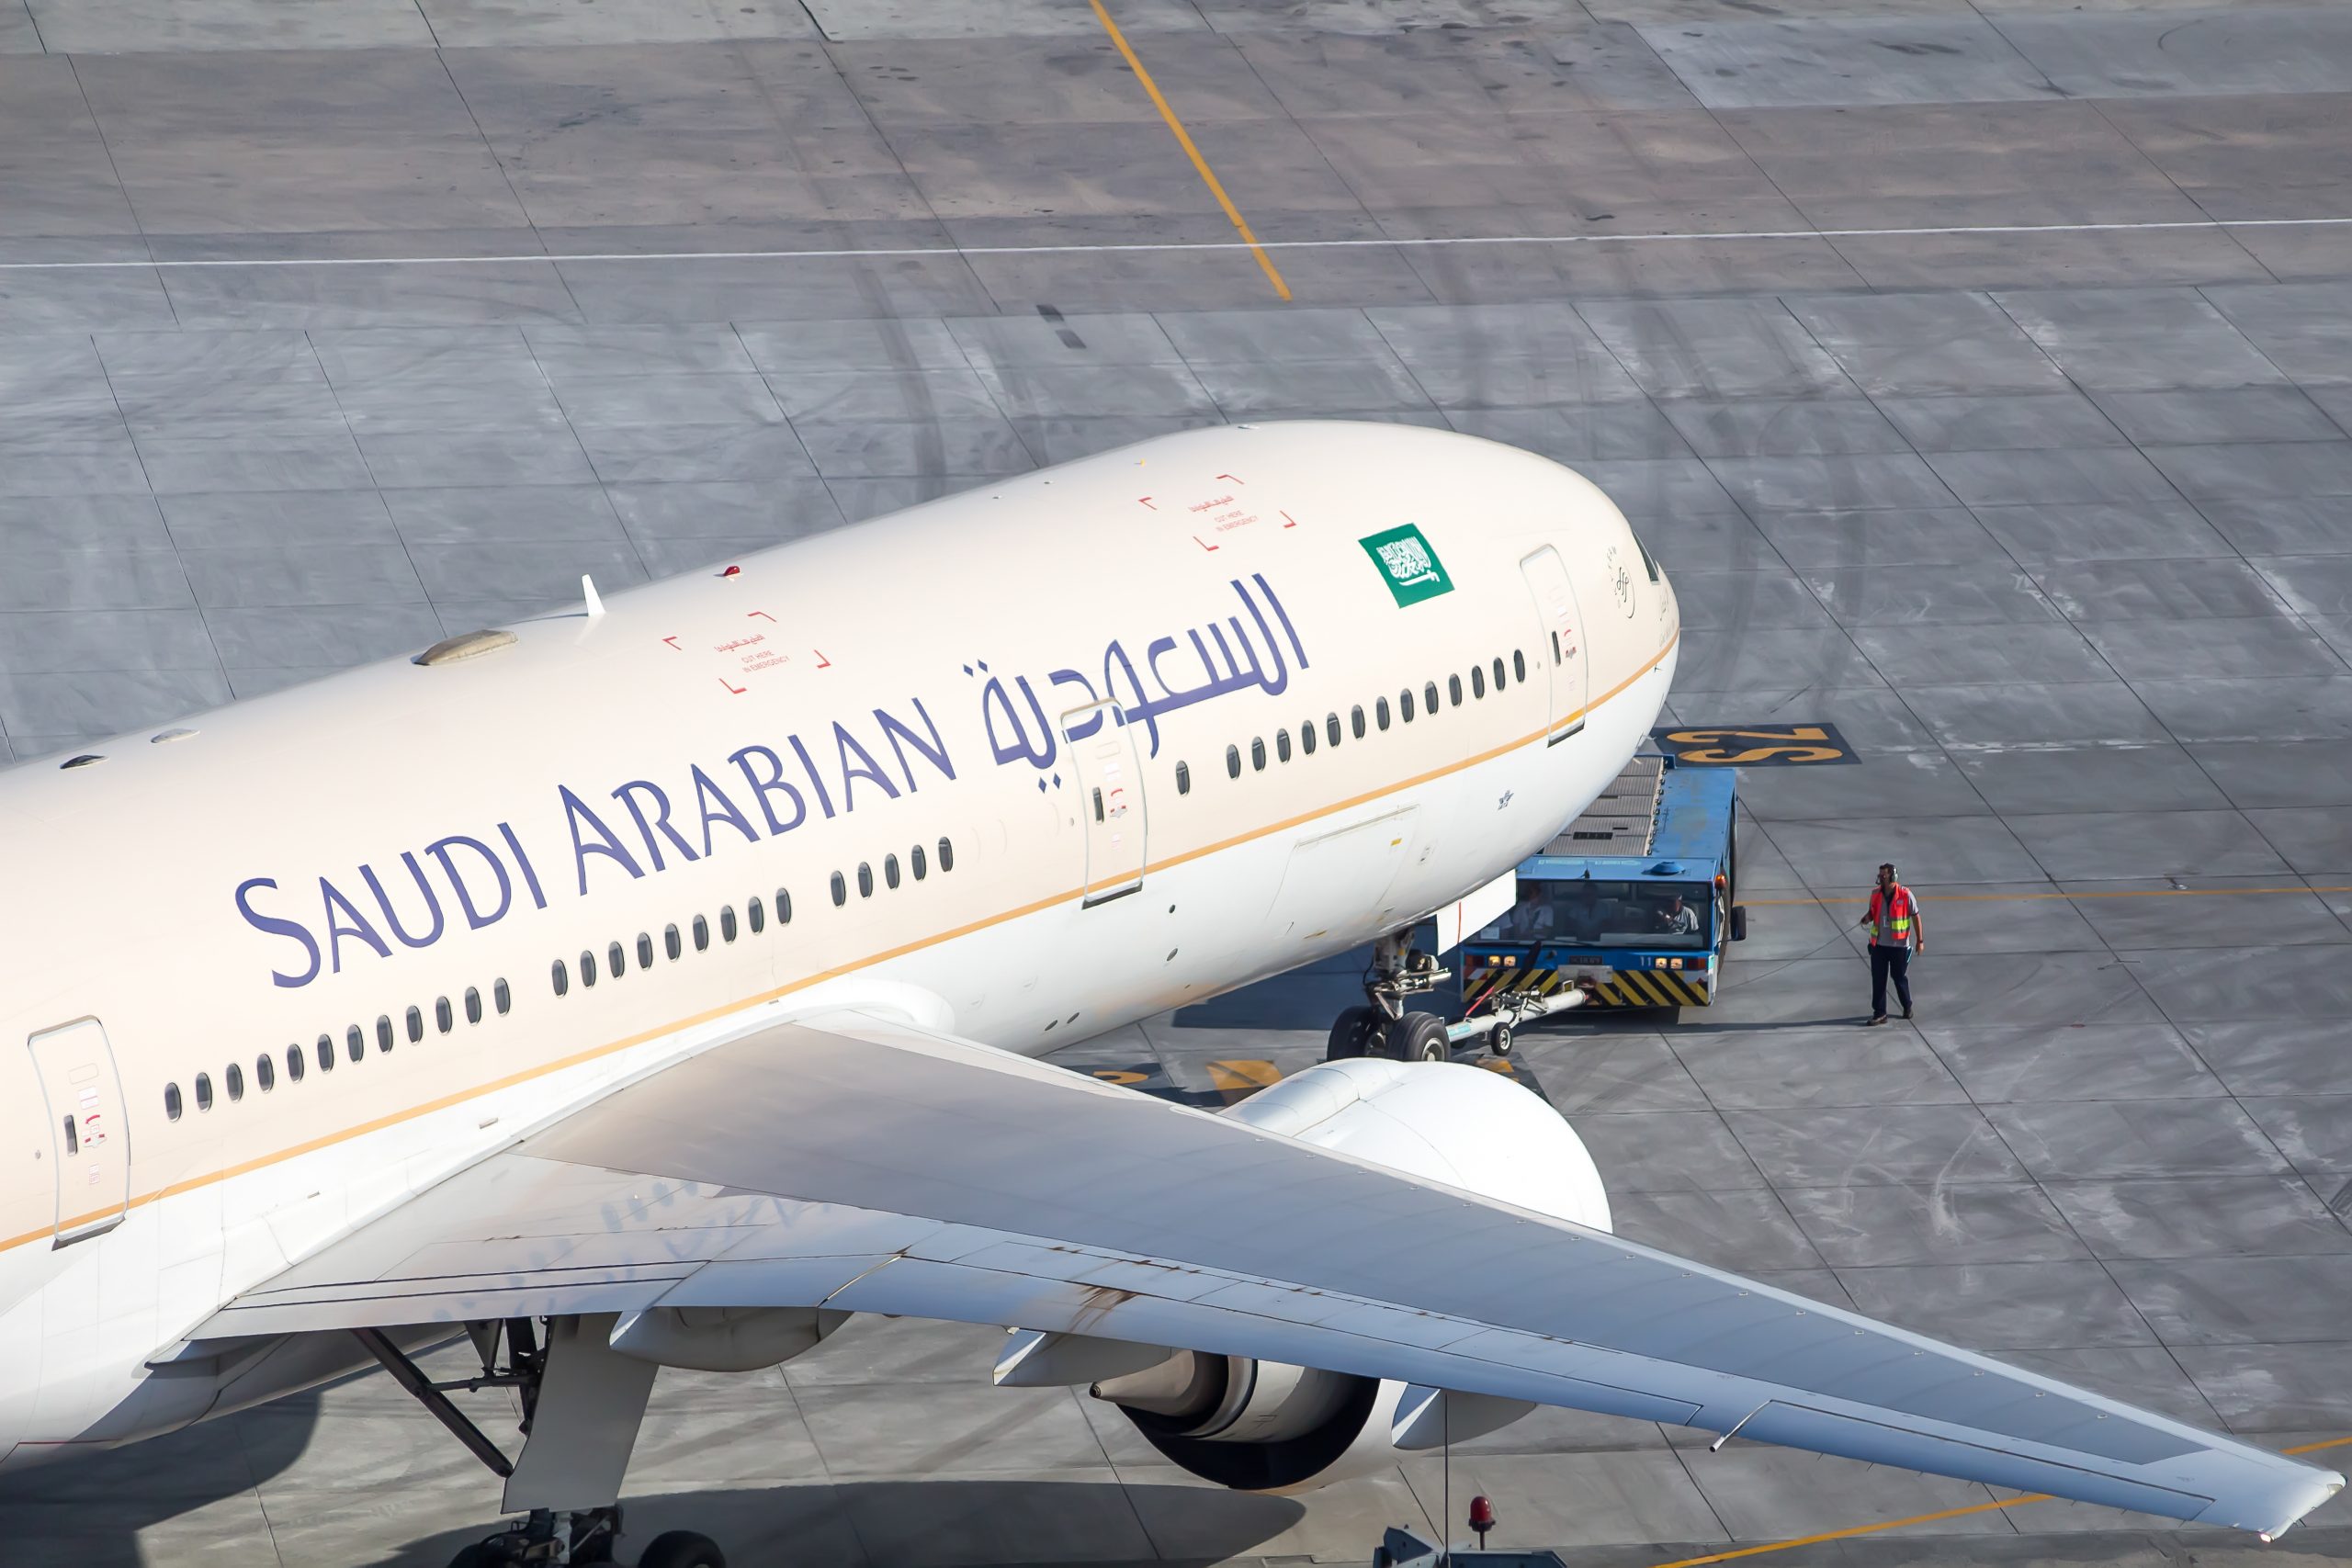 تطرح الشركة الرائدة في المملكة العربية السعودية “حقبة جديدة” لشركة الطيران بعد إزالة علامتها التجارية من حسابات وسائل التواصل الاجتماعي